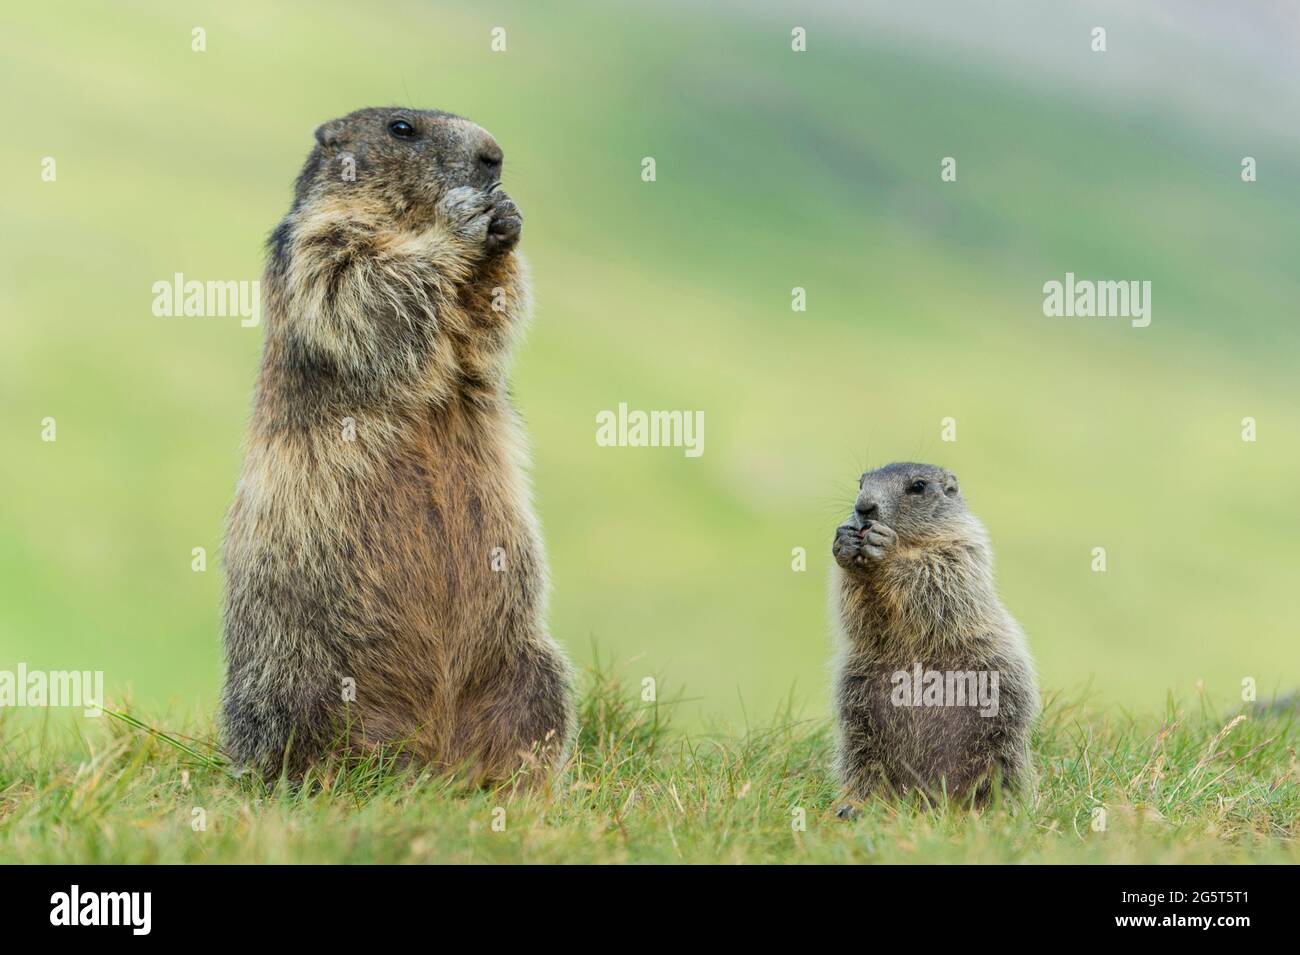 Marmotte alpine (Marmota marmota), peuplement adulte et juvénile ériger dans un pré, Autriche, parc national Hohe Tauern Banque D'Images